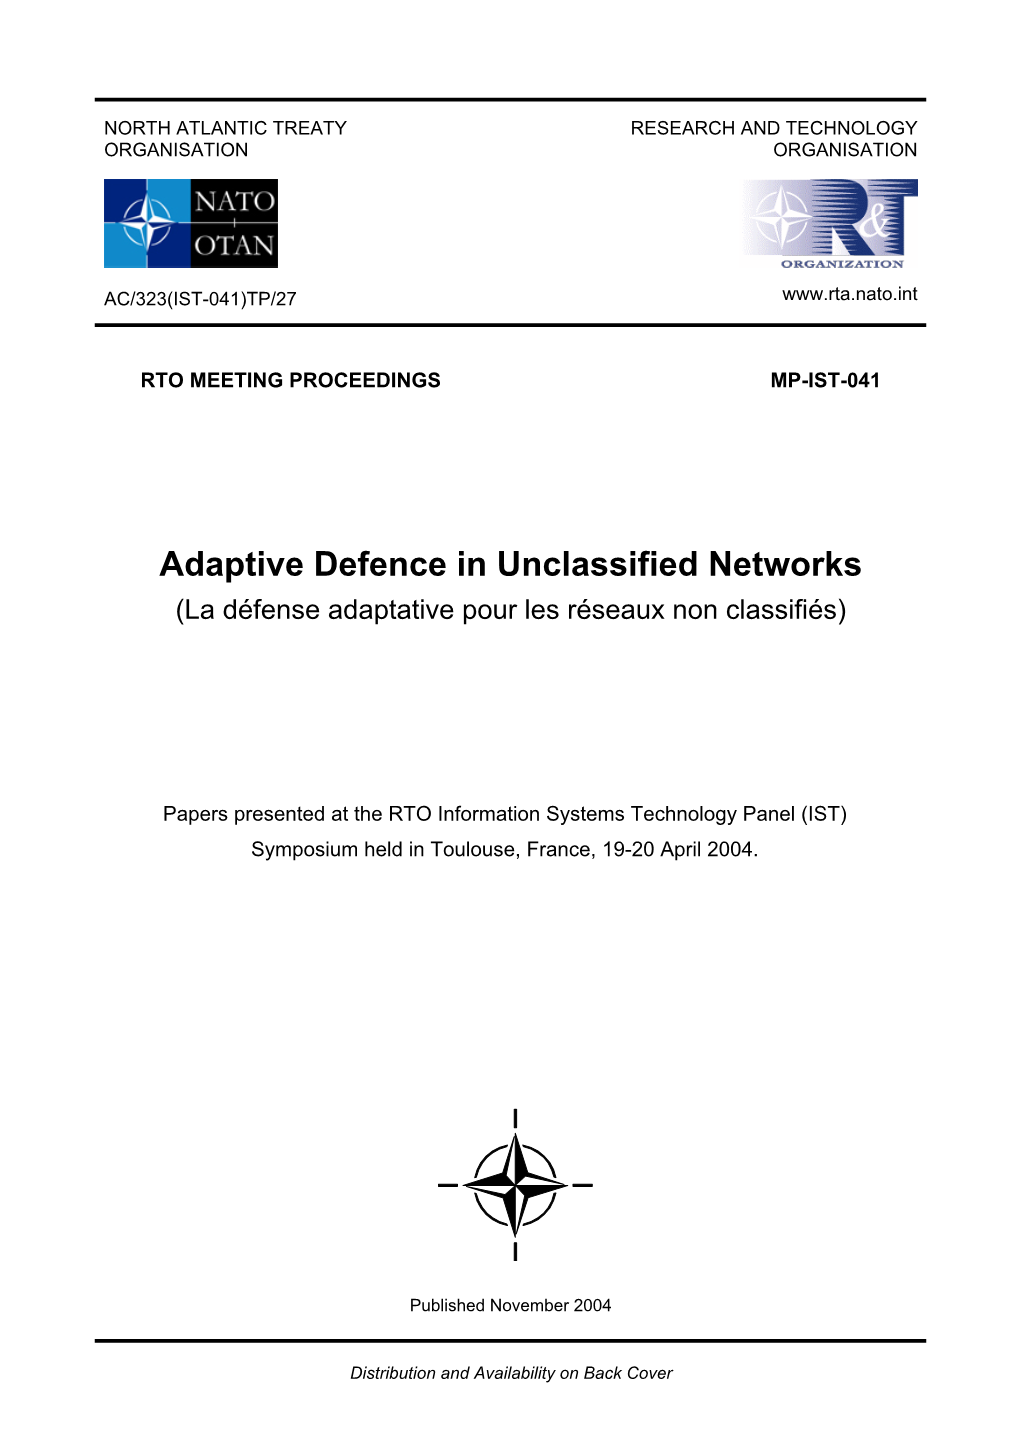 Adaptive Defence in Unclassified Networks (La Défense Adaptative Pour Les Réseaux Non Classifiés)